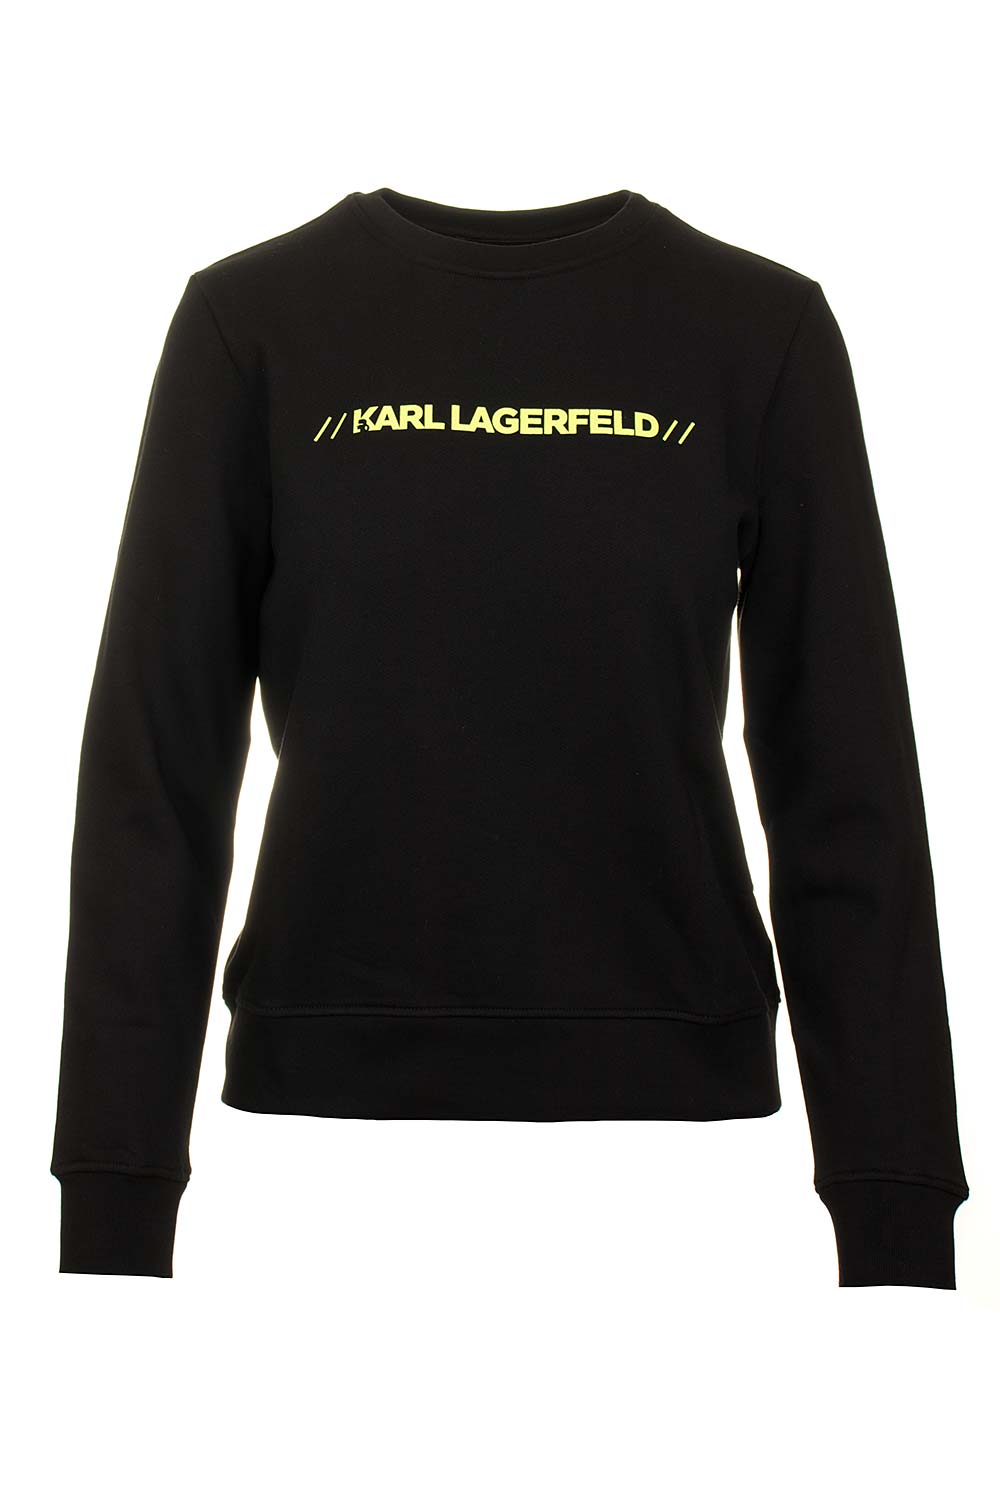 Karl Lagerfeld dámská mikina černá Velikost: S